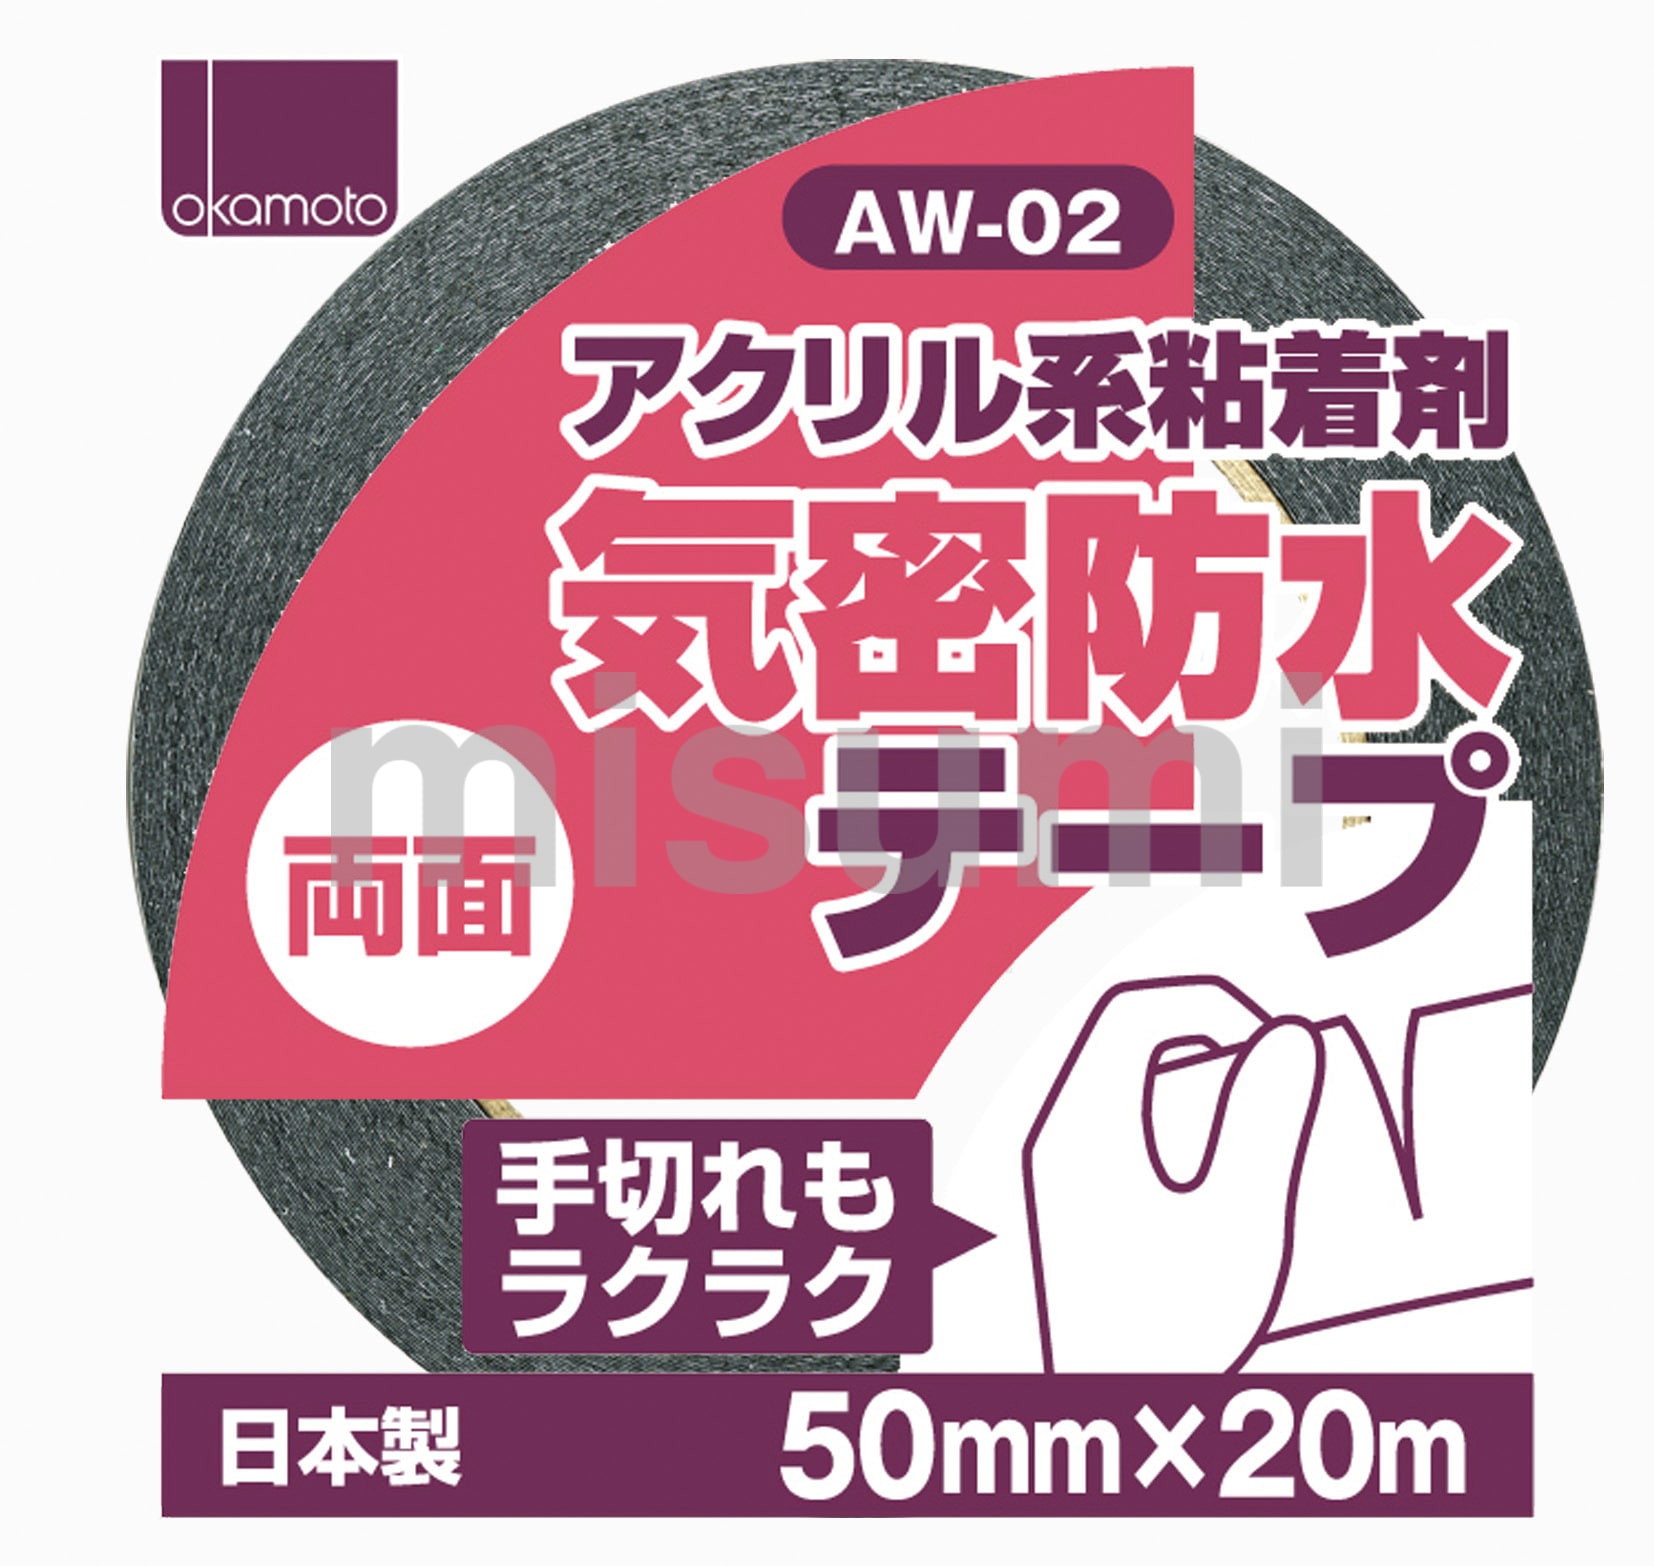 AW-02 アクリル気密防水テープ(両面テープ) オカモト MISUMI(ミスミ)